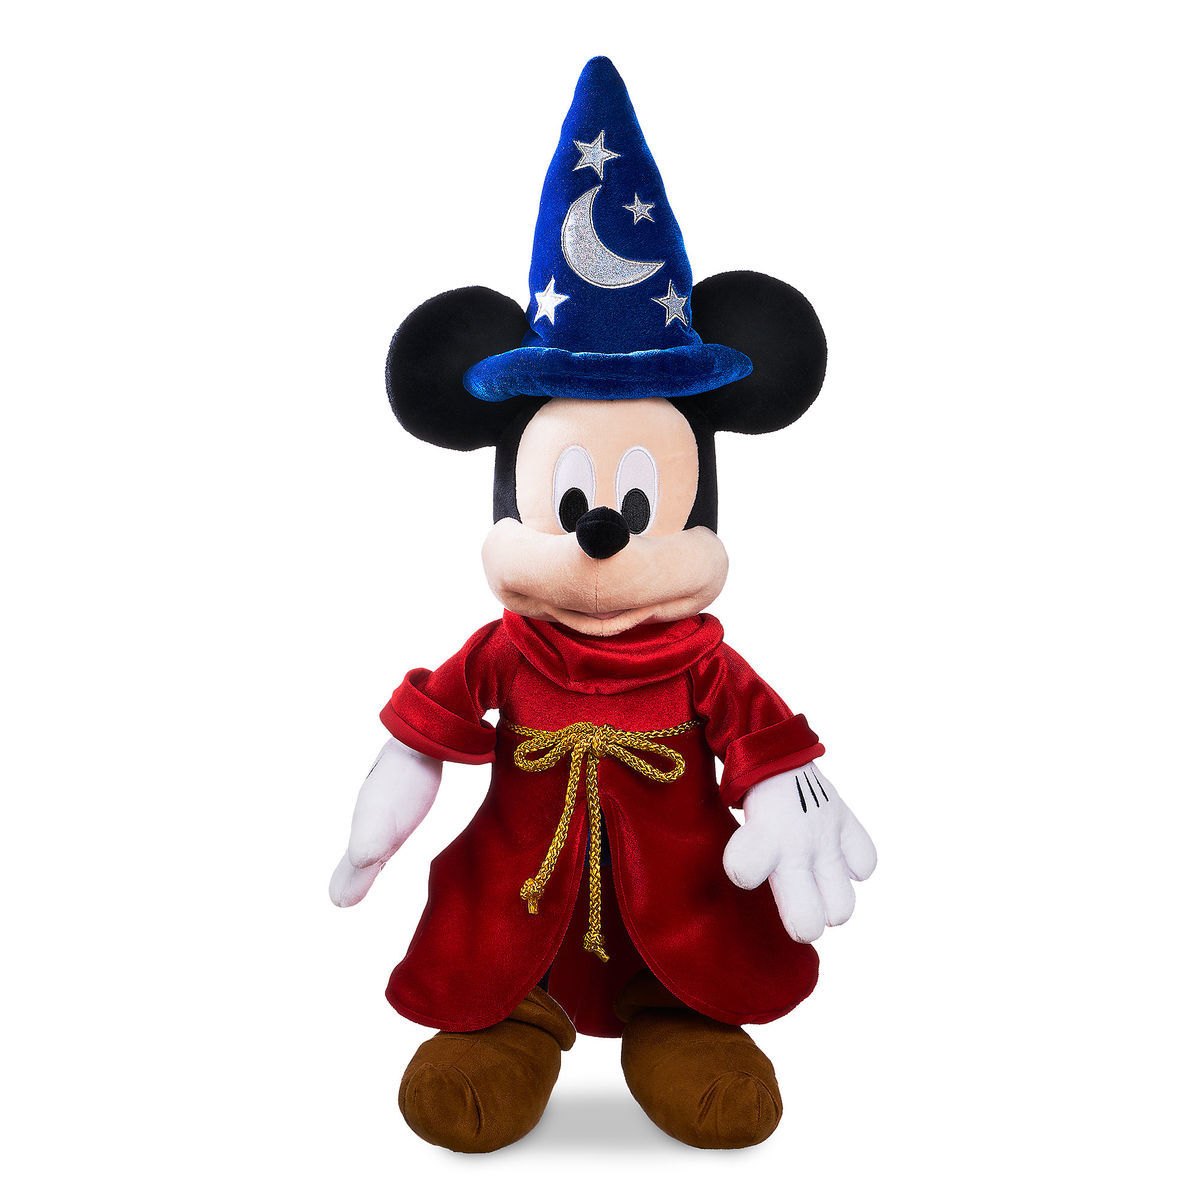 楽天市場 シュタイフ テディベア Steiff ディズニー ミッキーマウス 魔法使いの弟子 30cm Disney Mickey Mouse Sorcerer Apprentice 世界限定 テディベア専門店 アイビールーム